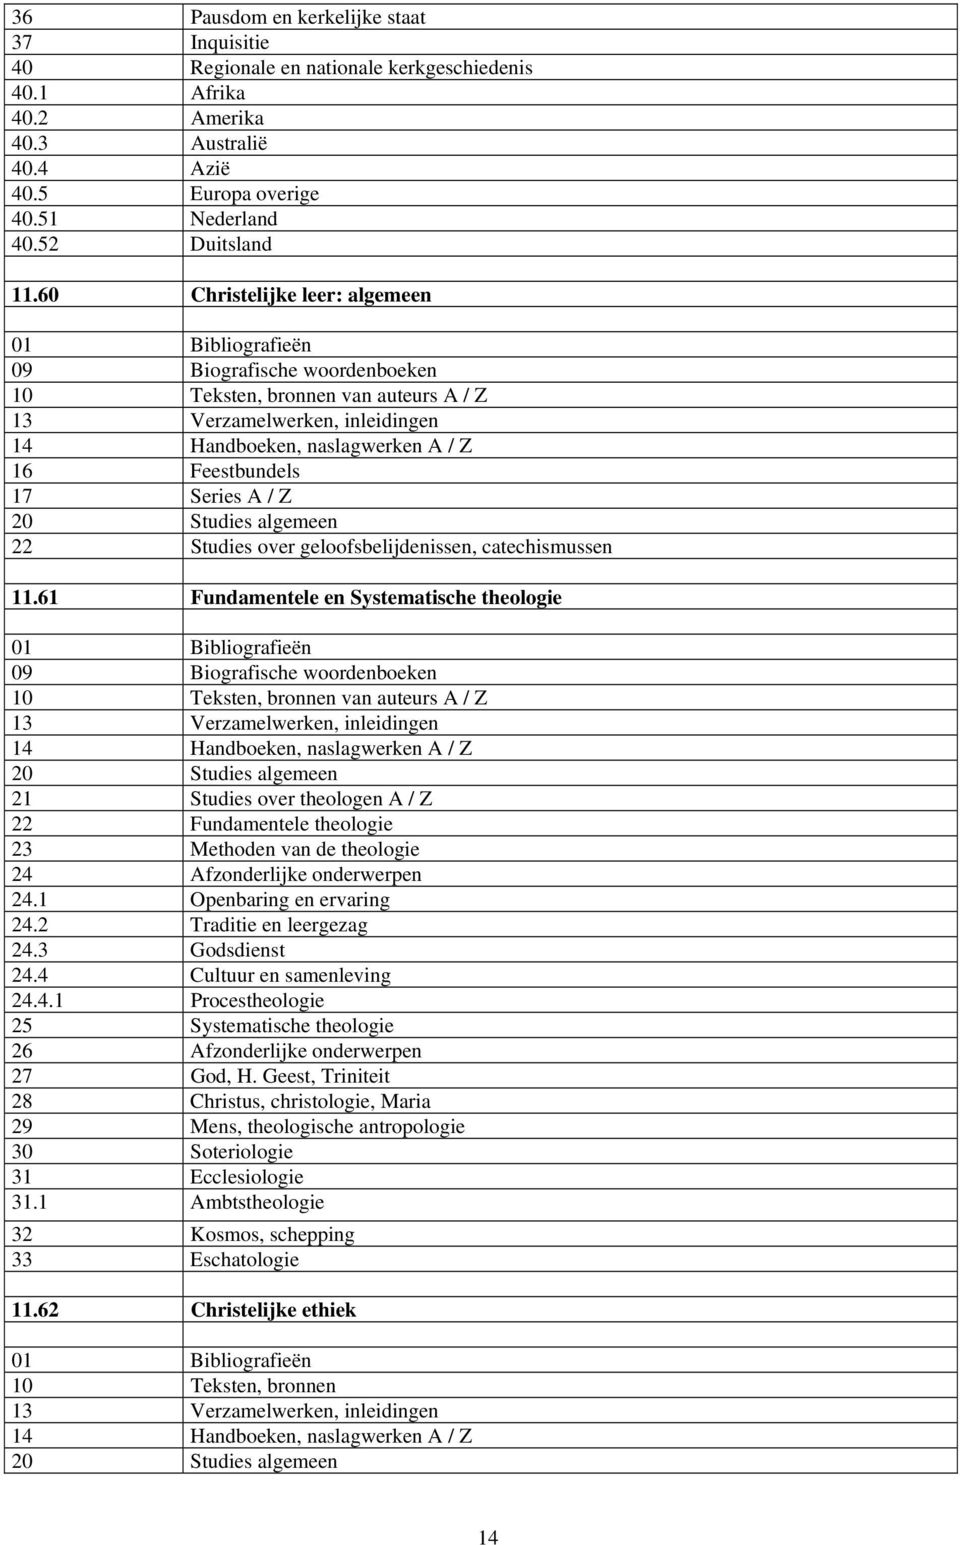 61 Fundamentele en Systematische theologie 09 Biografische woordenboeken van auteurs A / Z 21 Studies over theologen A / Z 22 Fundamentele theologie 23 Methoden van de theologie 24 Afzonderlijke